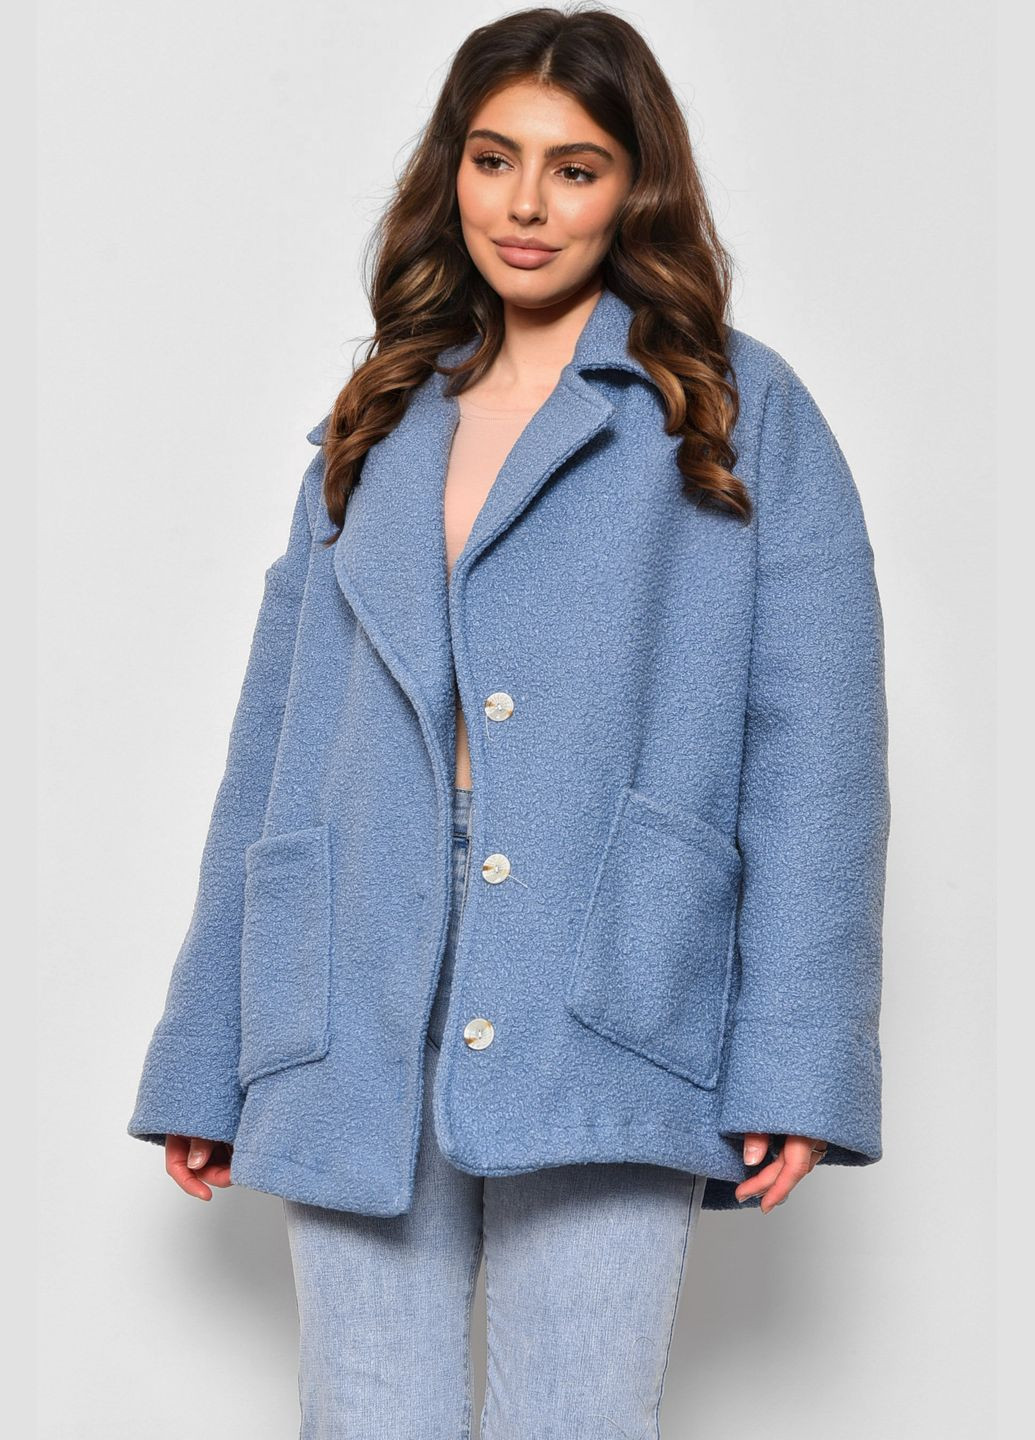 Голубое демисезонное Пальто женское полубатальное укороченное голубого цвета Let's Shop